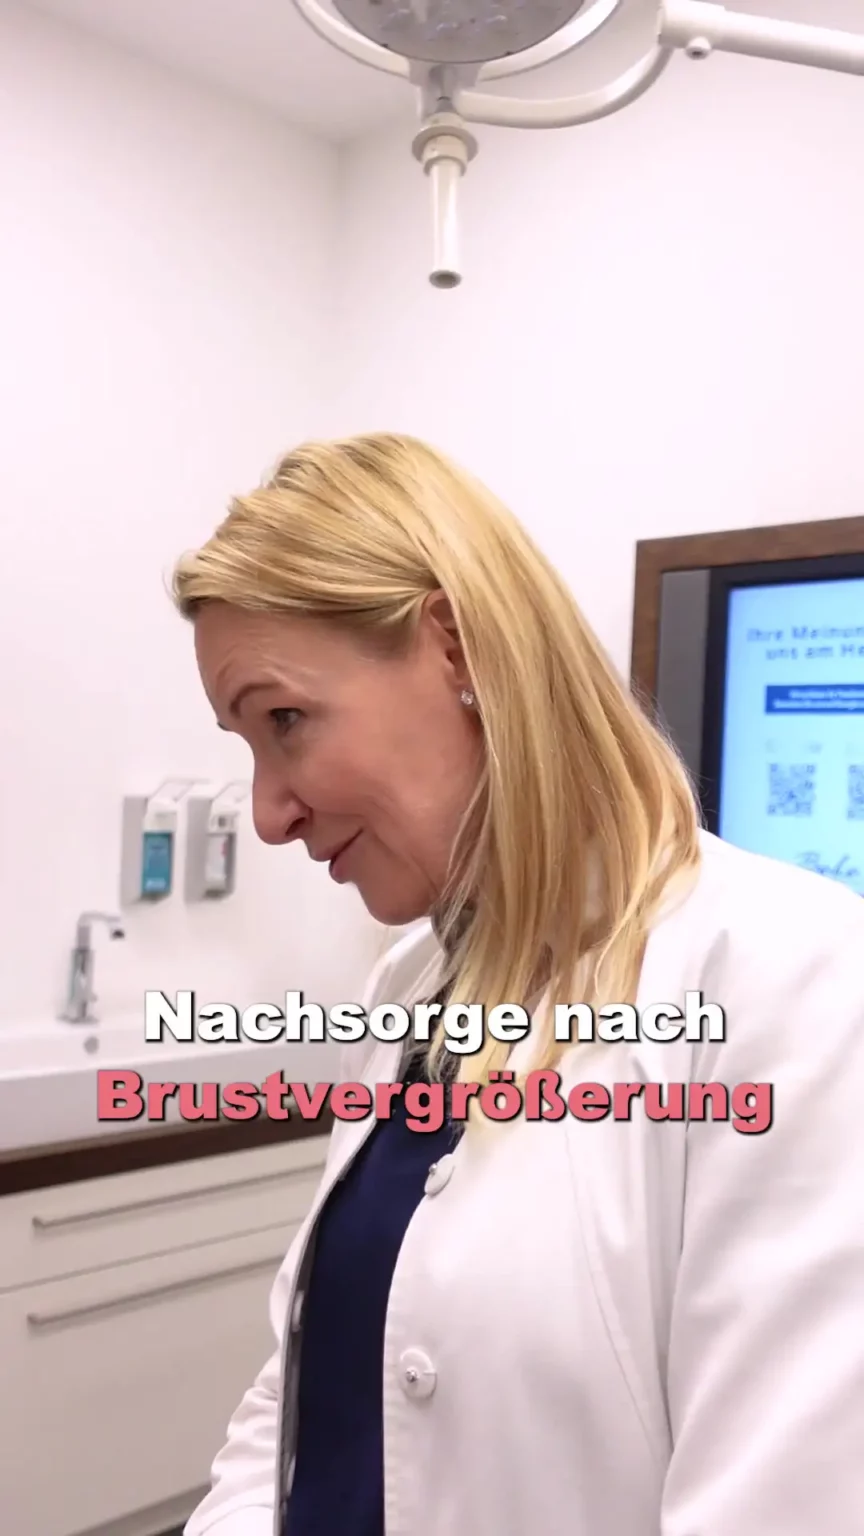 Dr. Berkei im Behandlungszimmer mit dem Text "Nachsorge nach Brustvergrößerung".